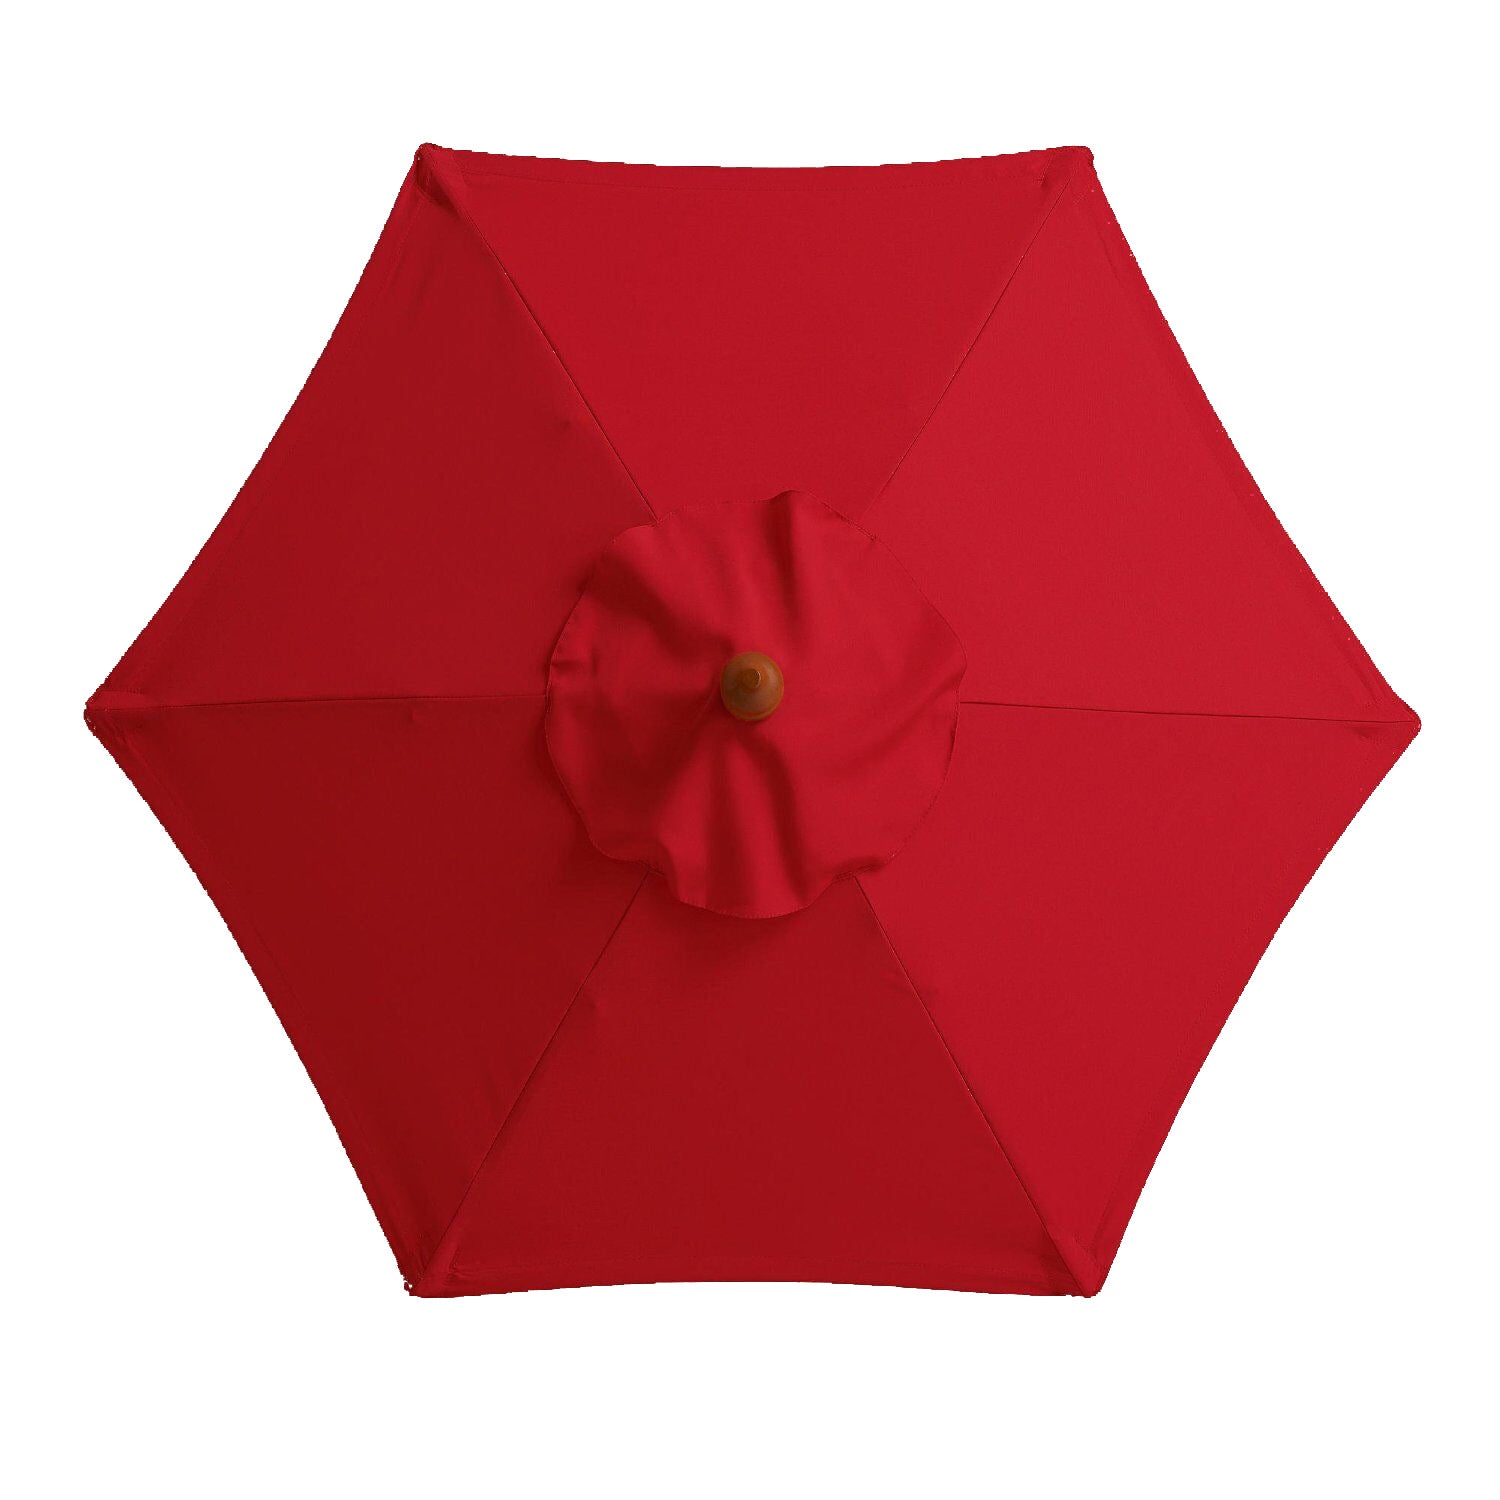 Outdoor Umbrella, Outdoor Rainproof Umbrella, Sun Umbrella, Umbrella Cover